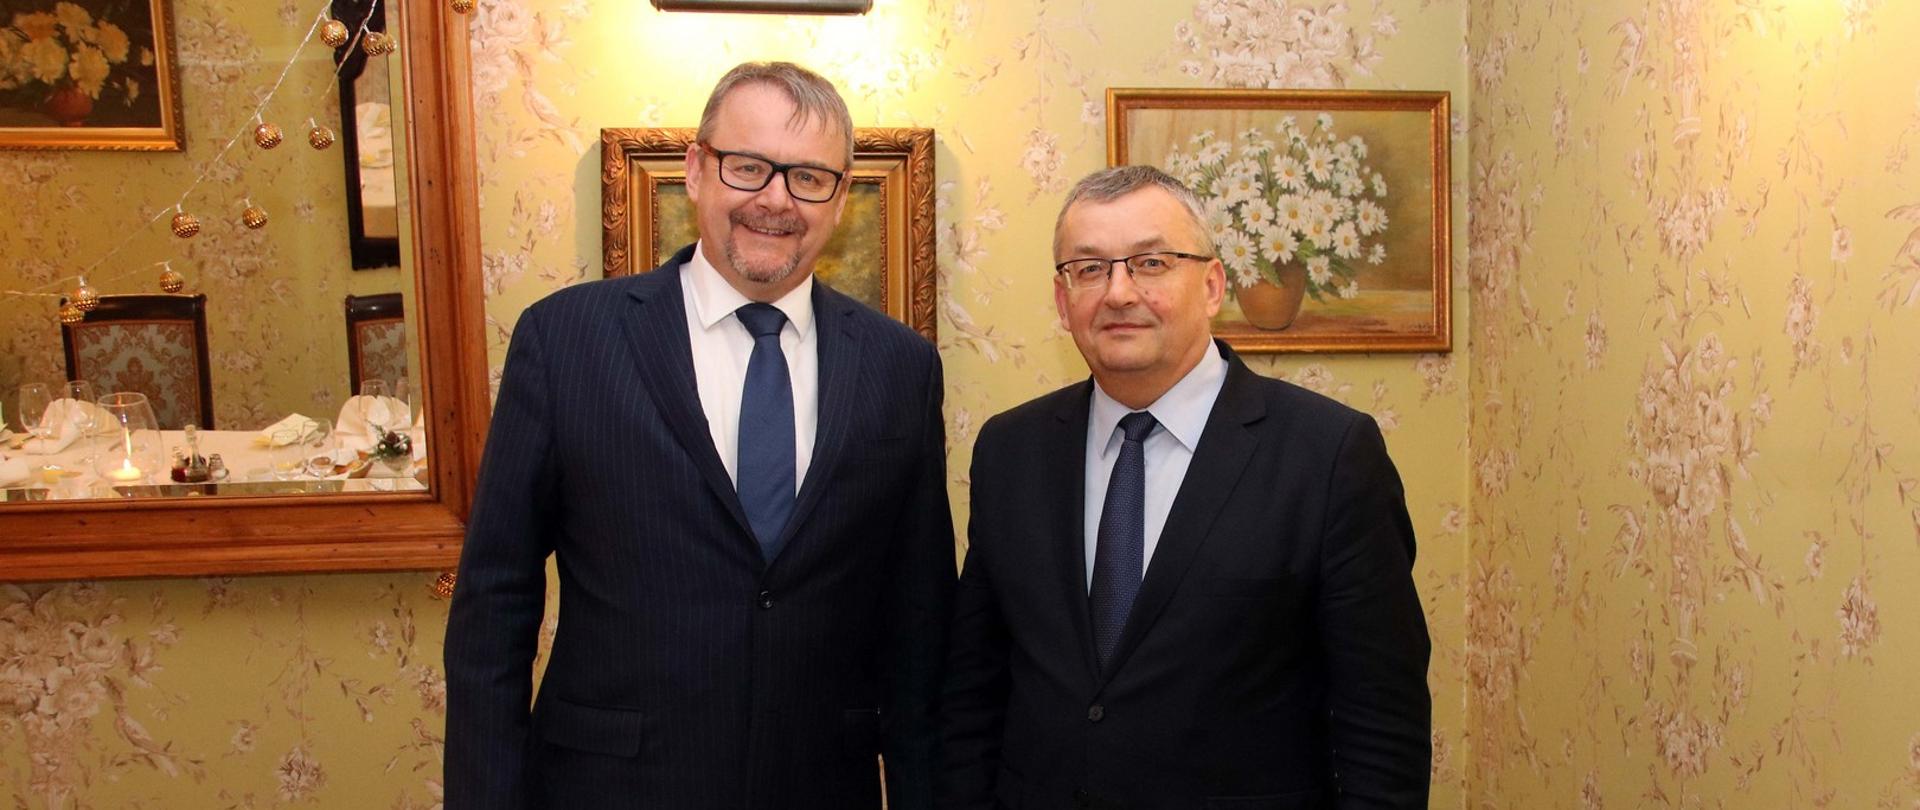 Spotkanie ministra Andrzeja Adamczyka z ministrem transportu Republiki Czeskiej Danem T'okiem